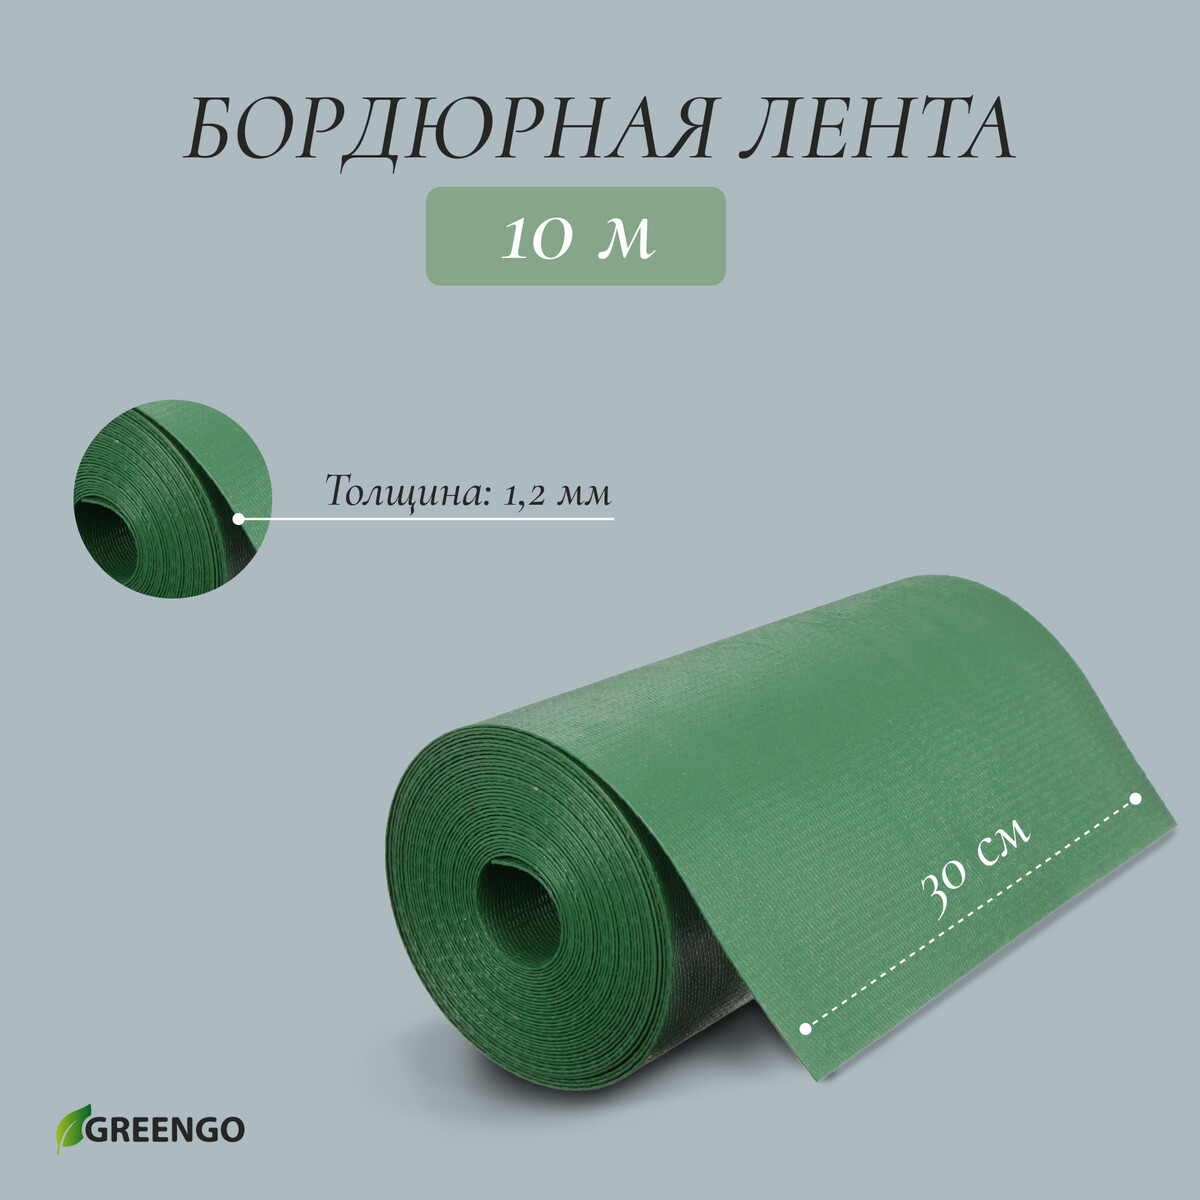 Лента бордюрная, 0.3 × 10 м, толщина 1.2 мм, пластиковая, зеленая, greengo лента бордюрная 0 15 × 9 м толщина 1 2 мм пластиковая фигурная коричневая